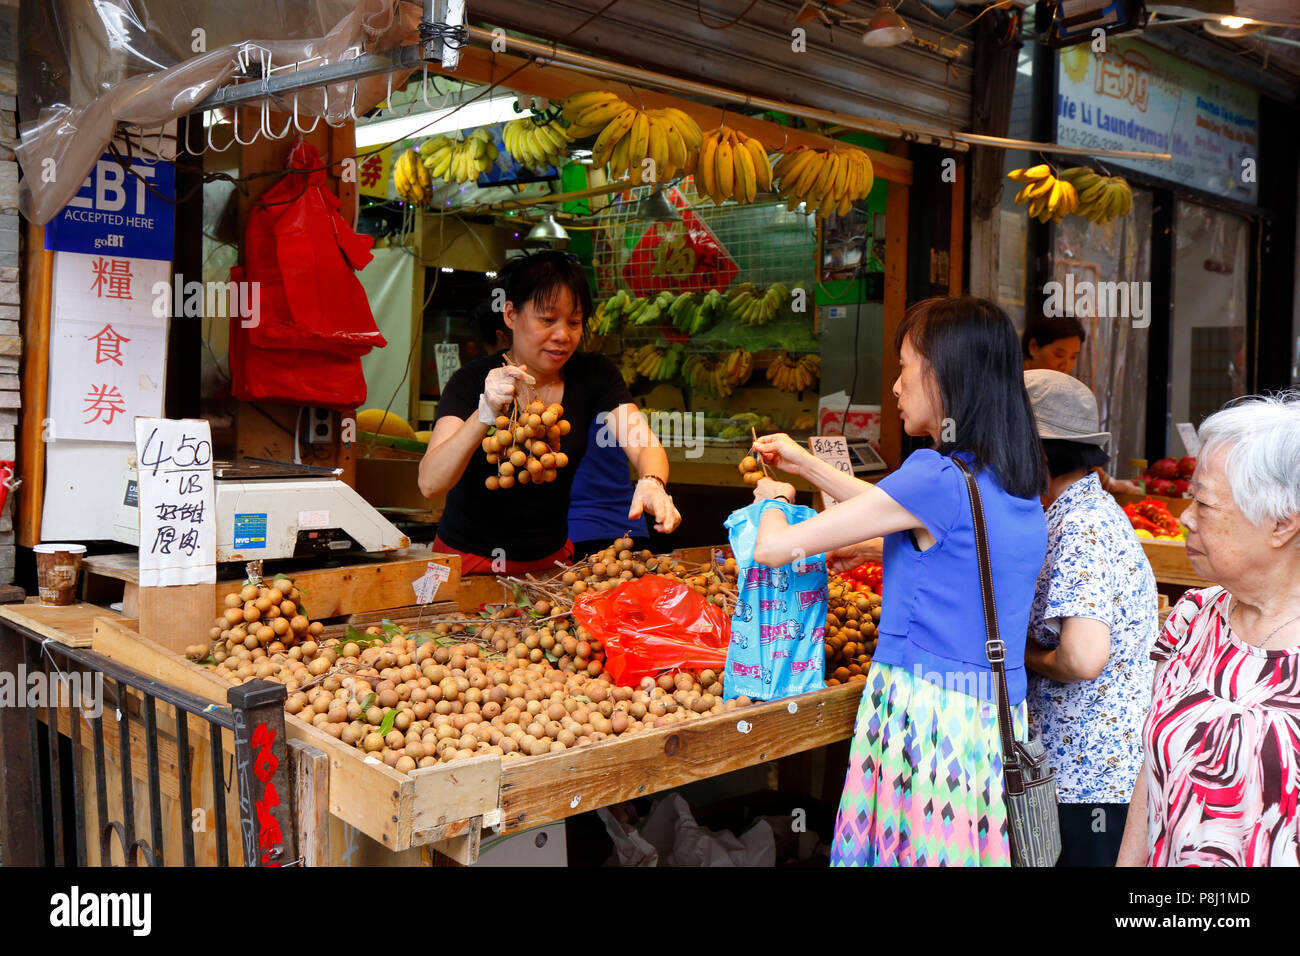 Leute kaufen Longanfrüchte in einem New York City Manhattan Chinatown Obst und Produkte Verkäufer. 華埠, 紐約, 唐人街 Stockfoto